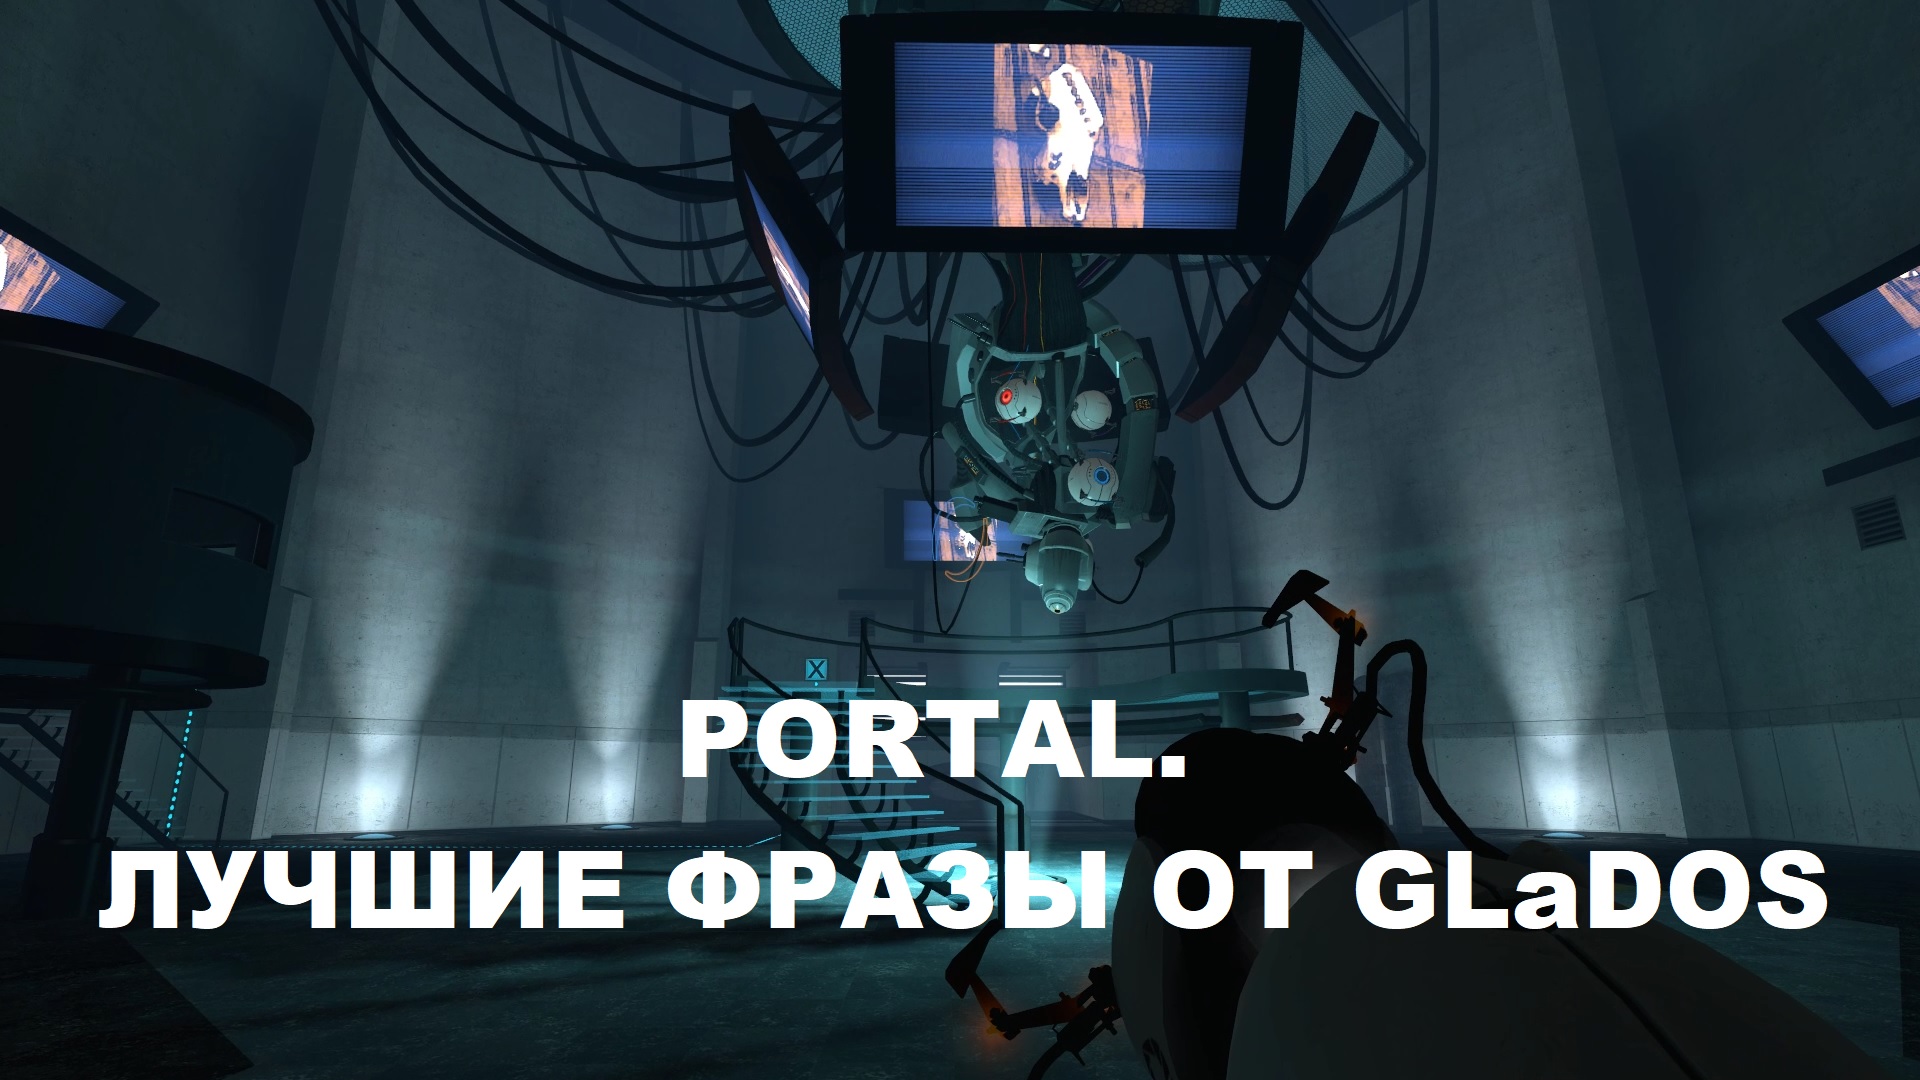 Portal 2 гладос фразы фото 4